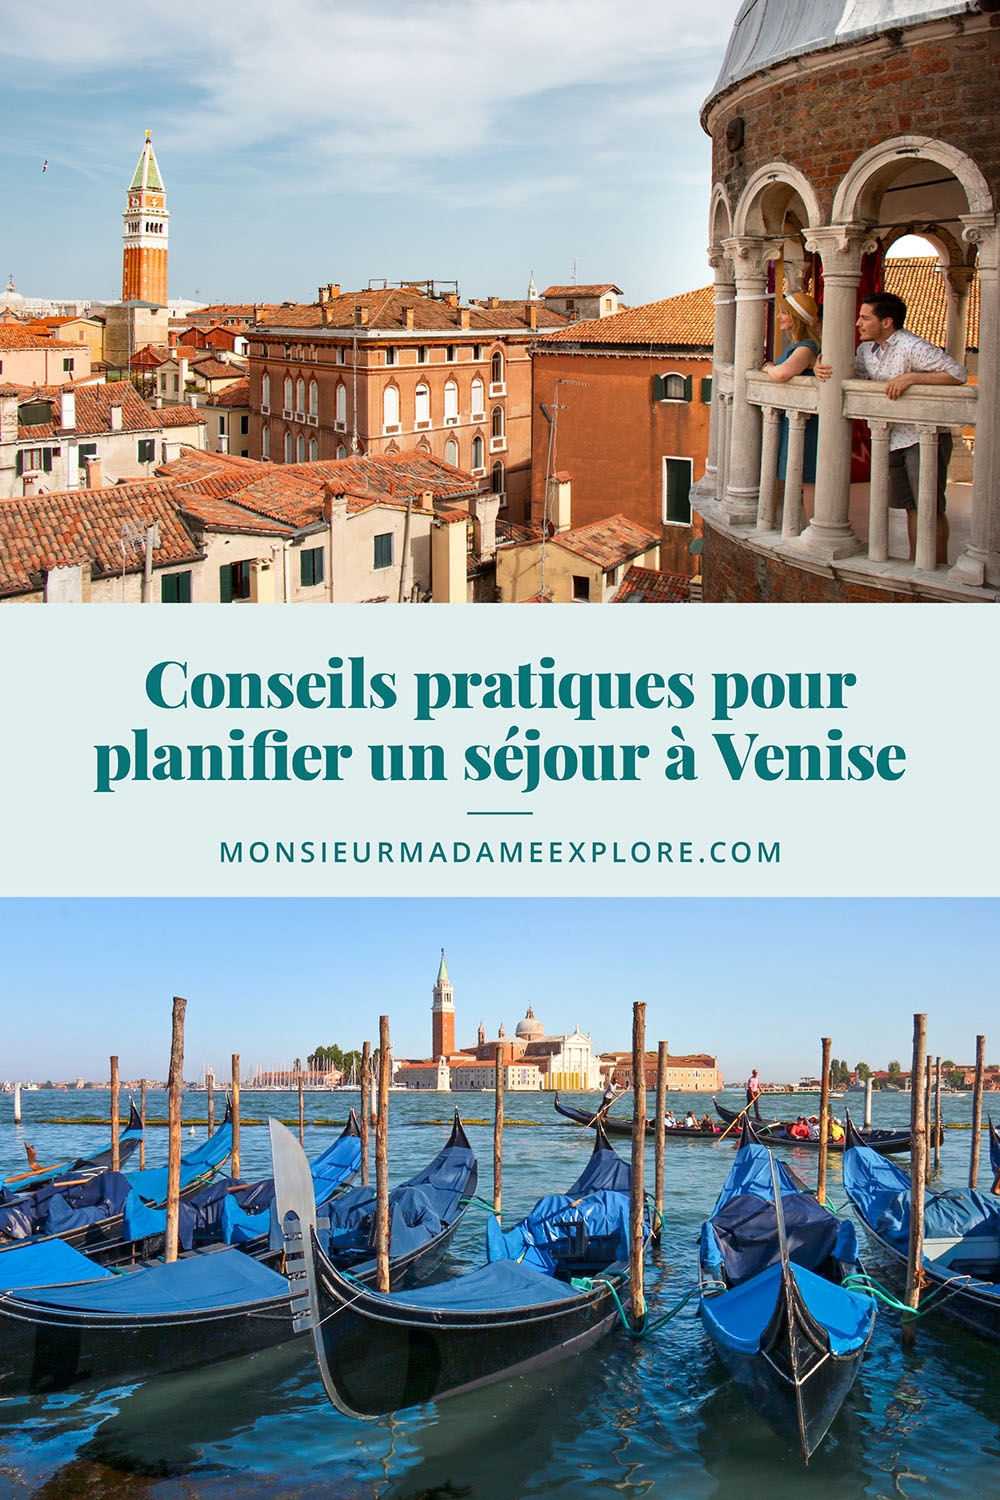 Conseils pratiques pour planifier un séjour à Venise, Monsieur+Madame Explore, Blogue de voyage, Italie / Tips to plan your trip in Venice, Italy